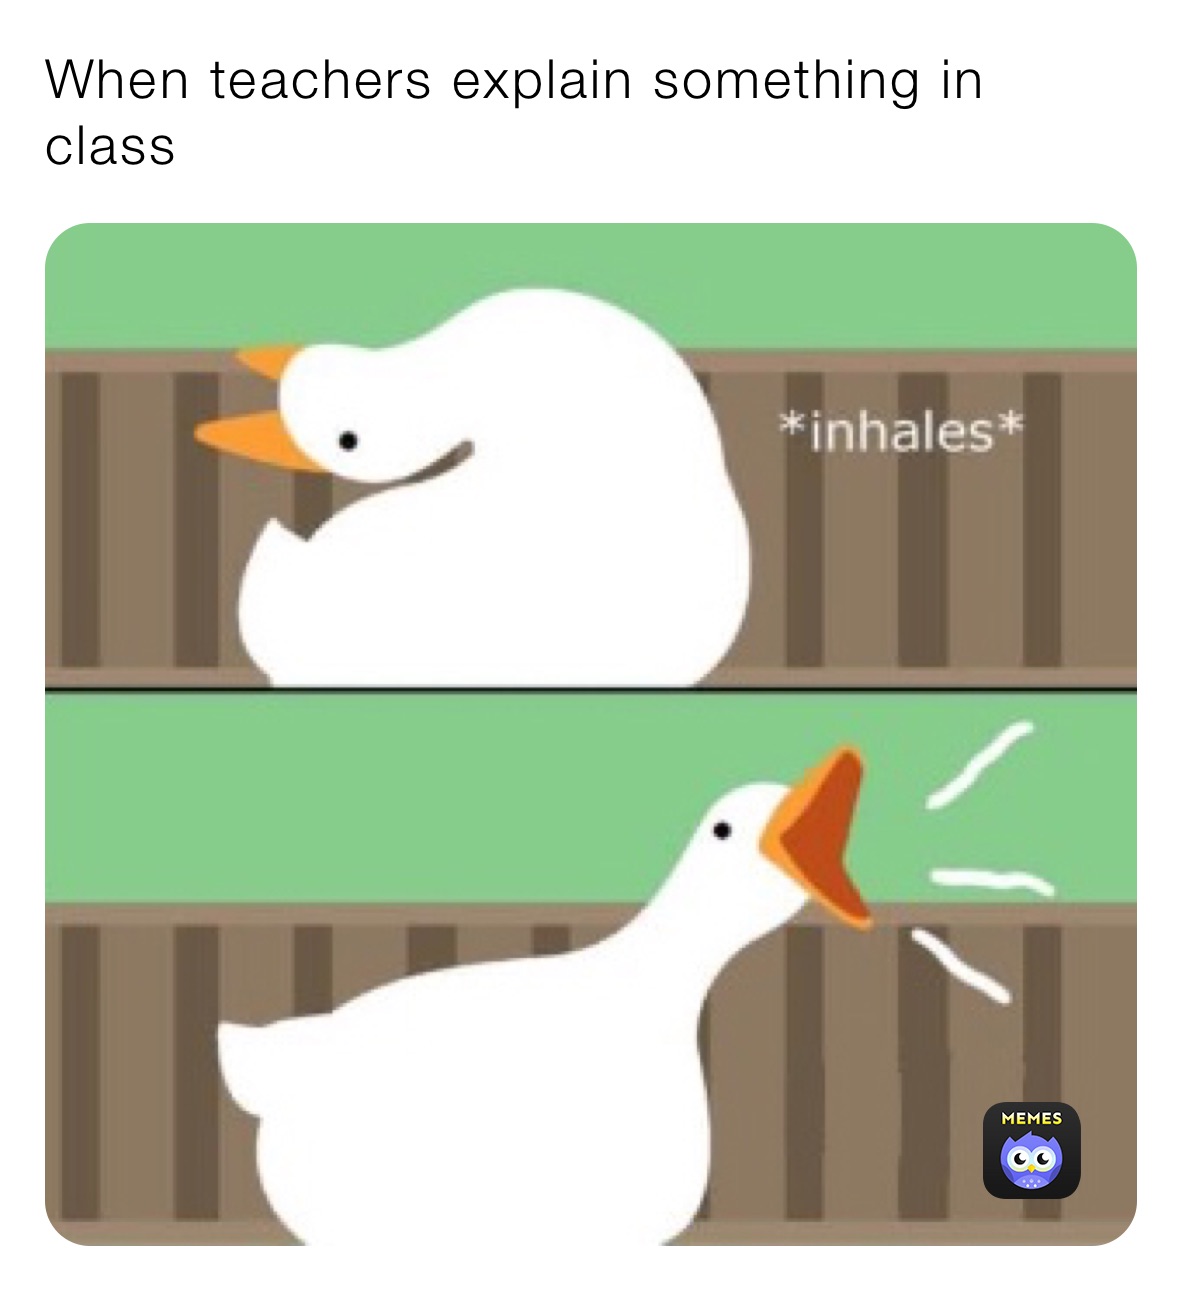 When teachers explain something in class